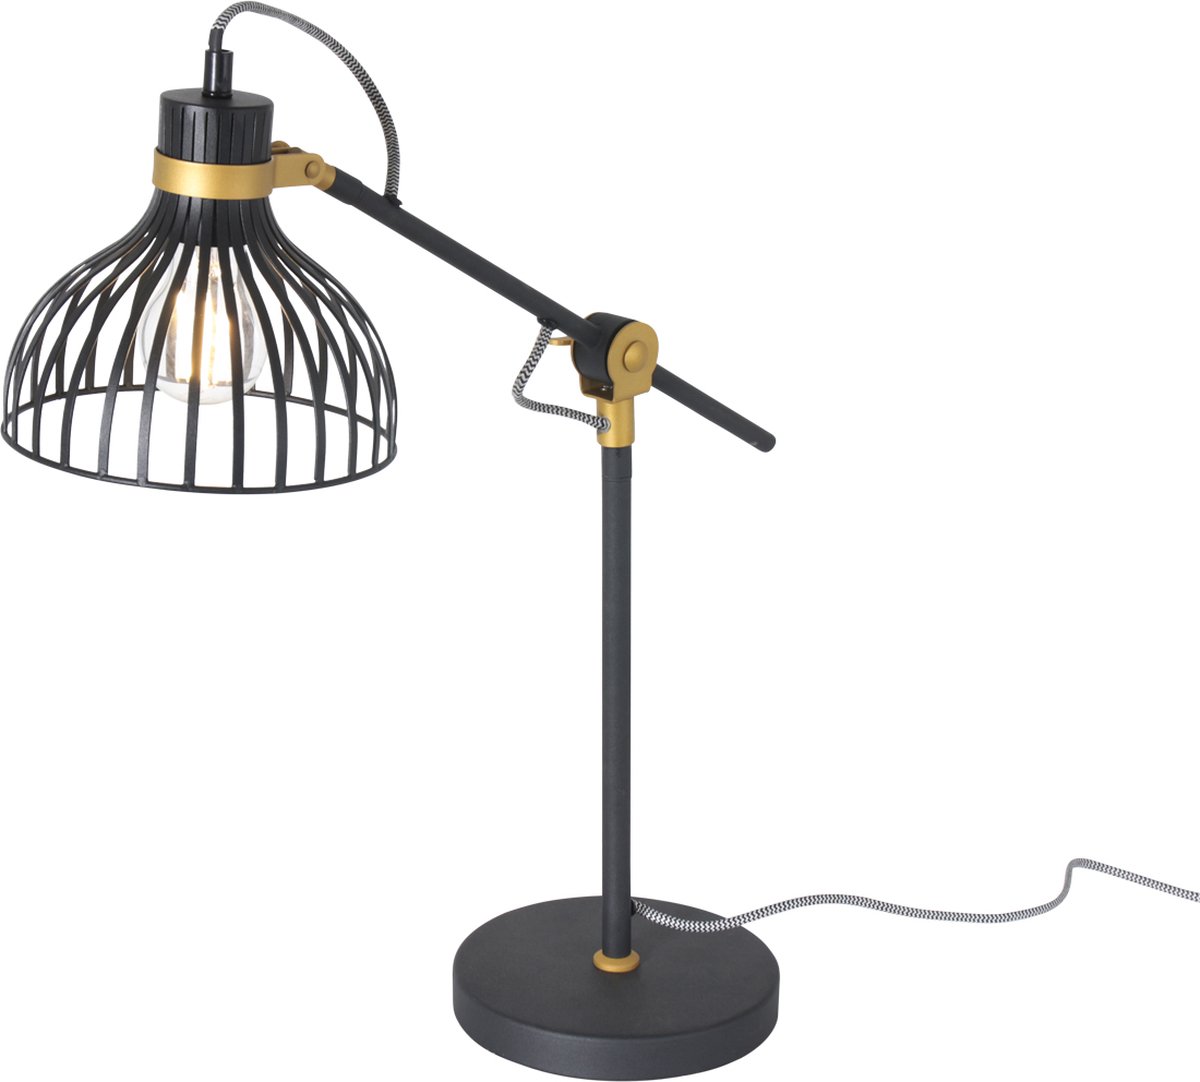 Tafellamp Dunbar | 1 lichts | Ø 18 cm | bureaulamp | metaal | goud / mat zwart | draai / kantelbaar | modern design